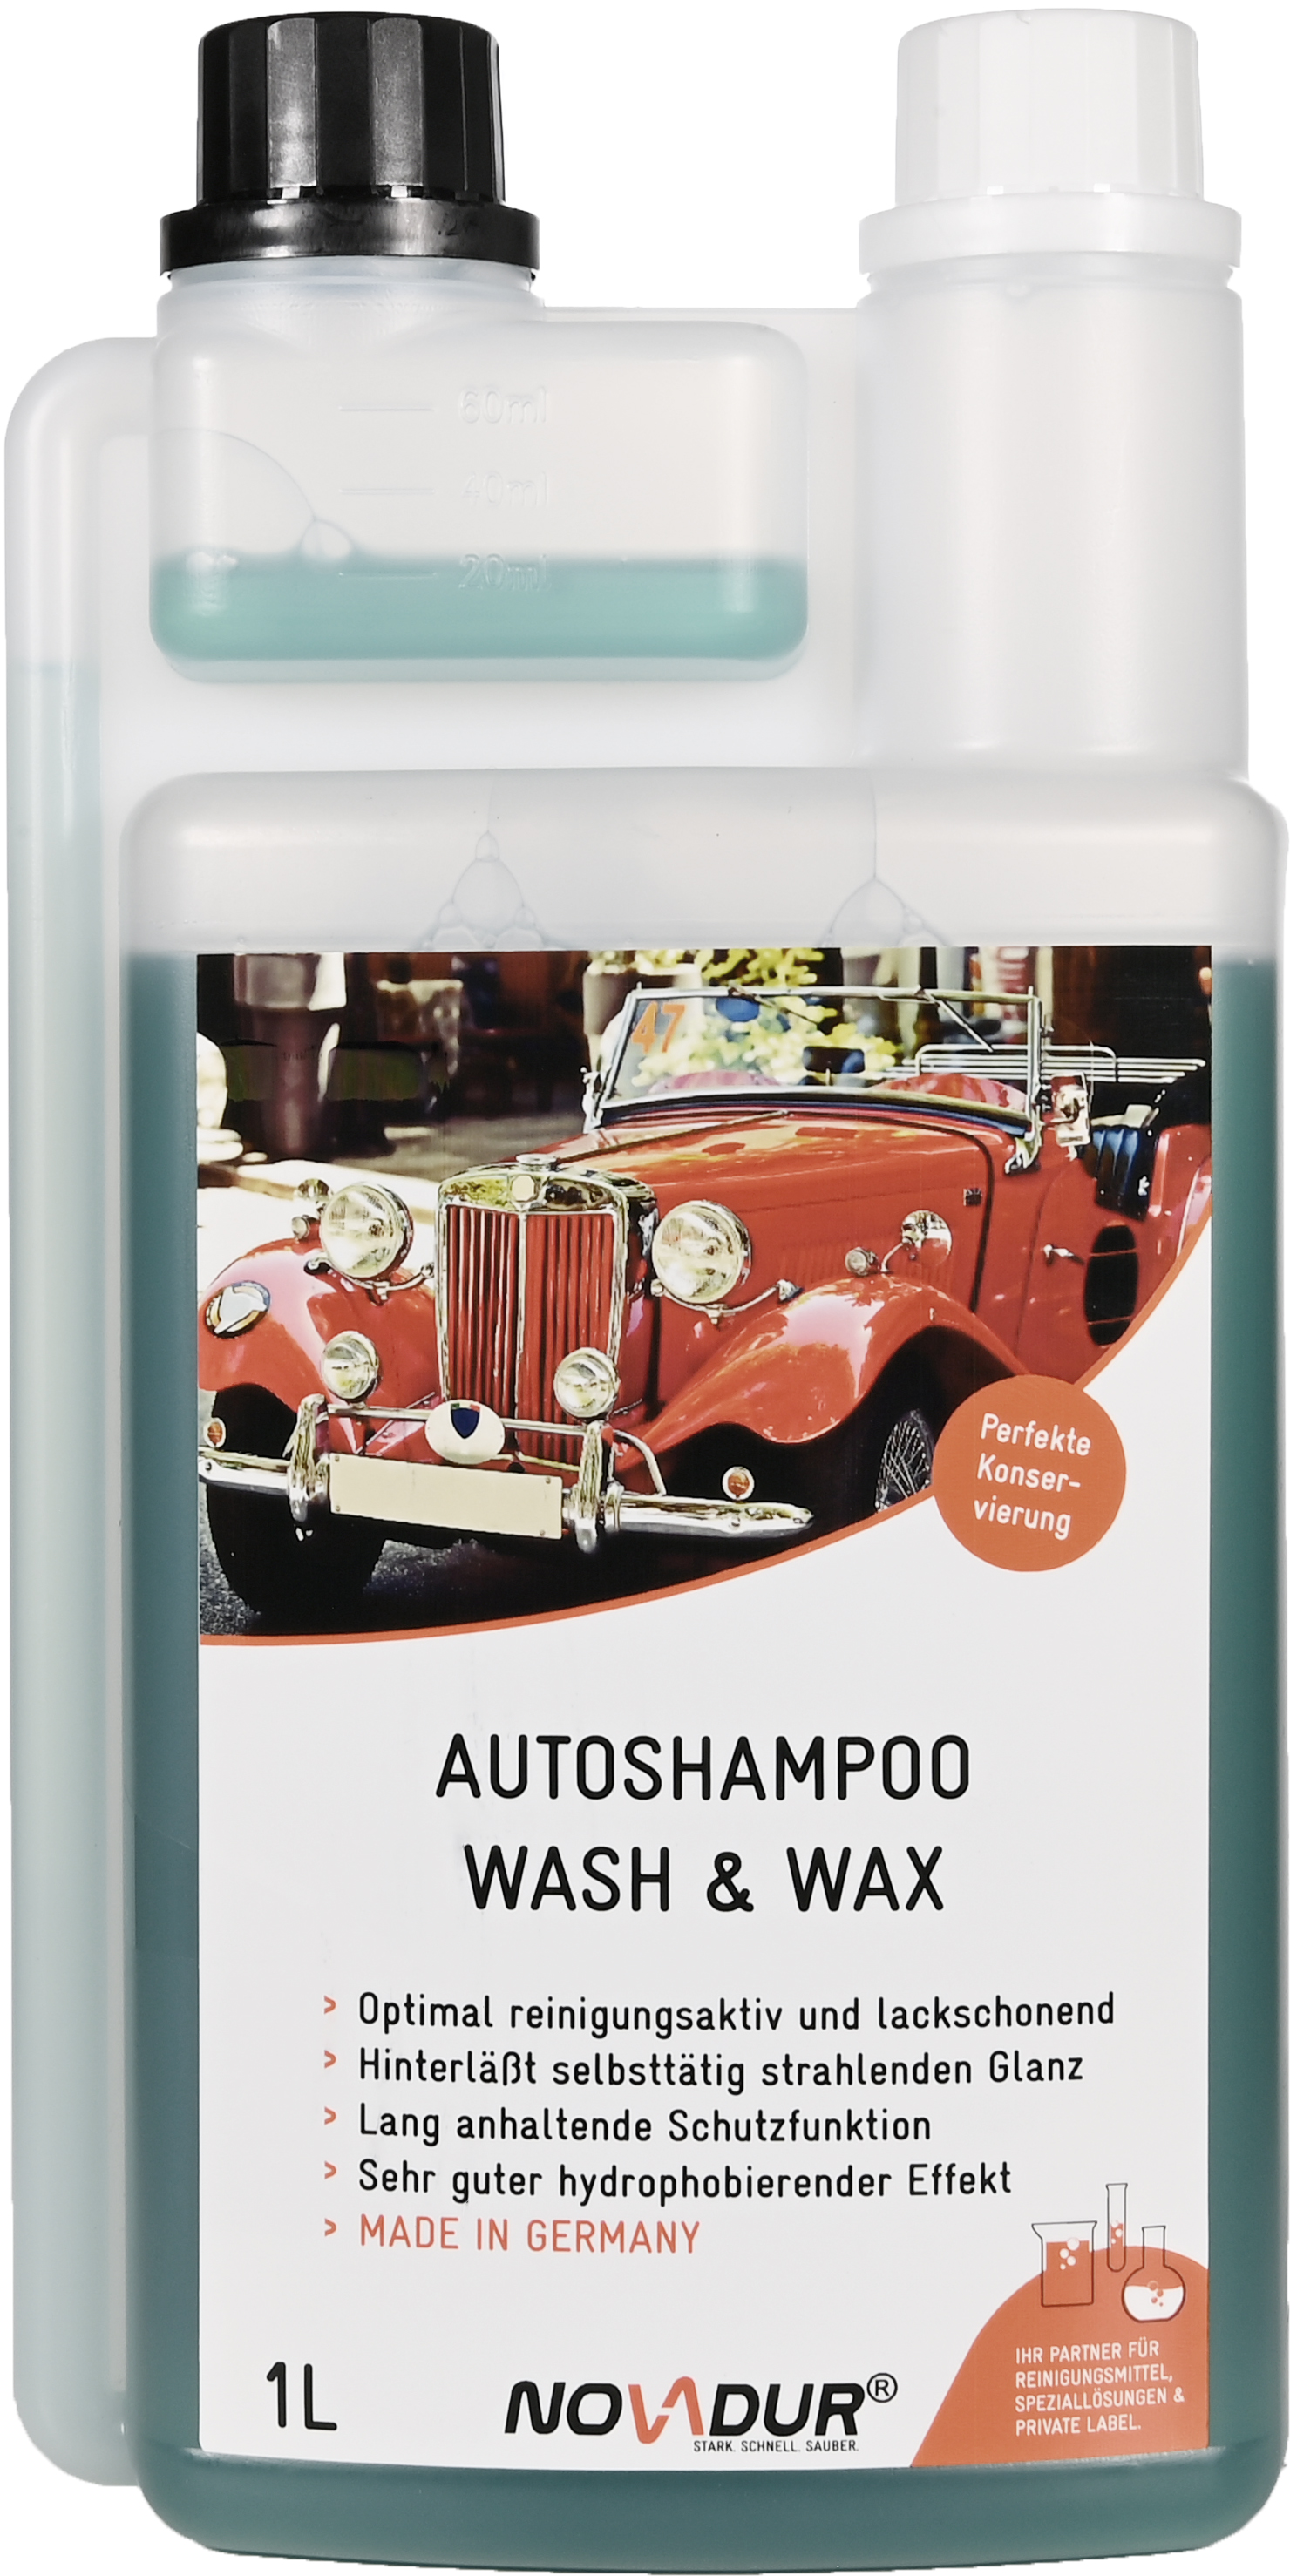 Autoshampoo Wash and Wax